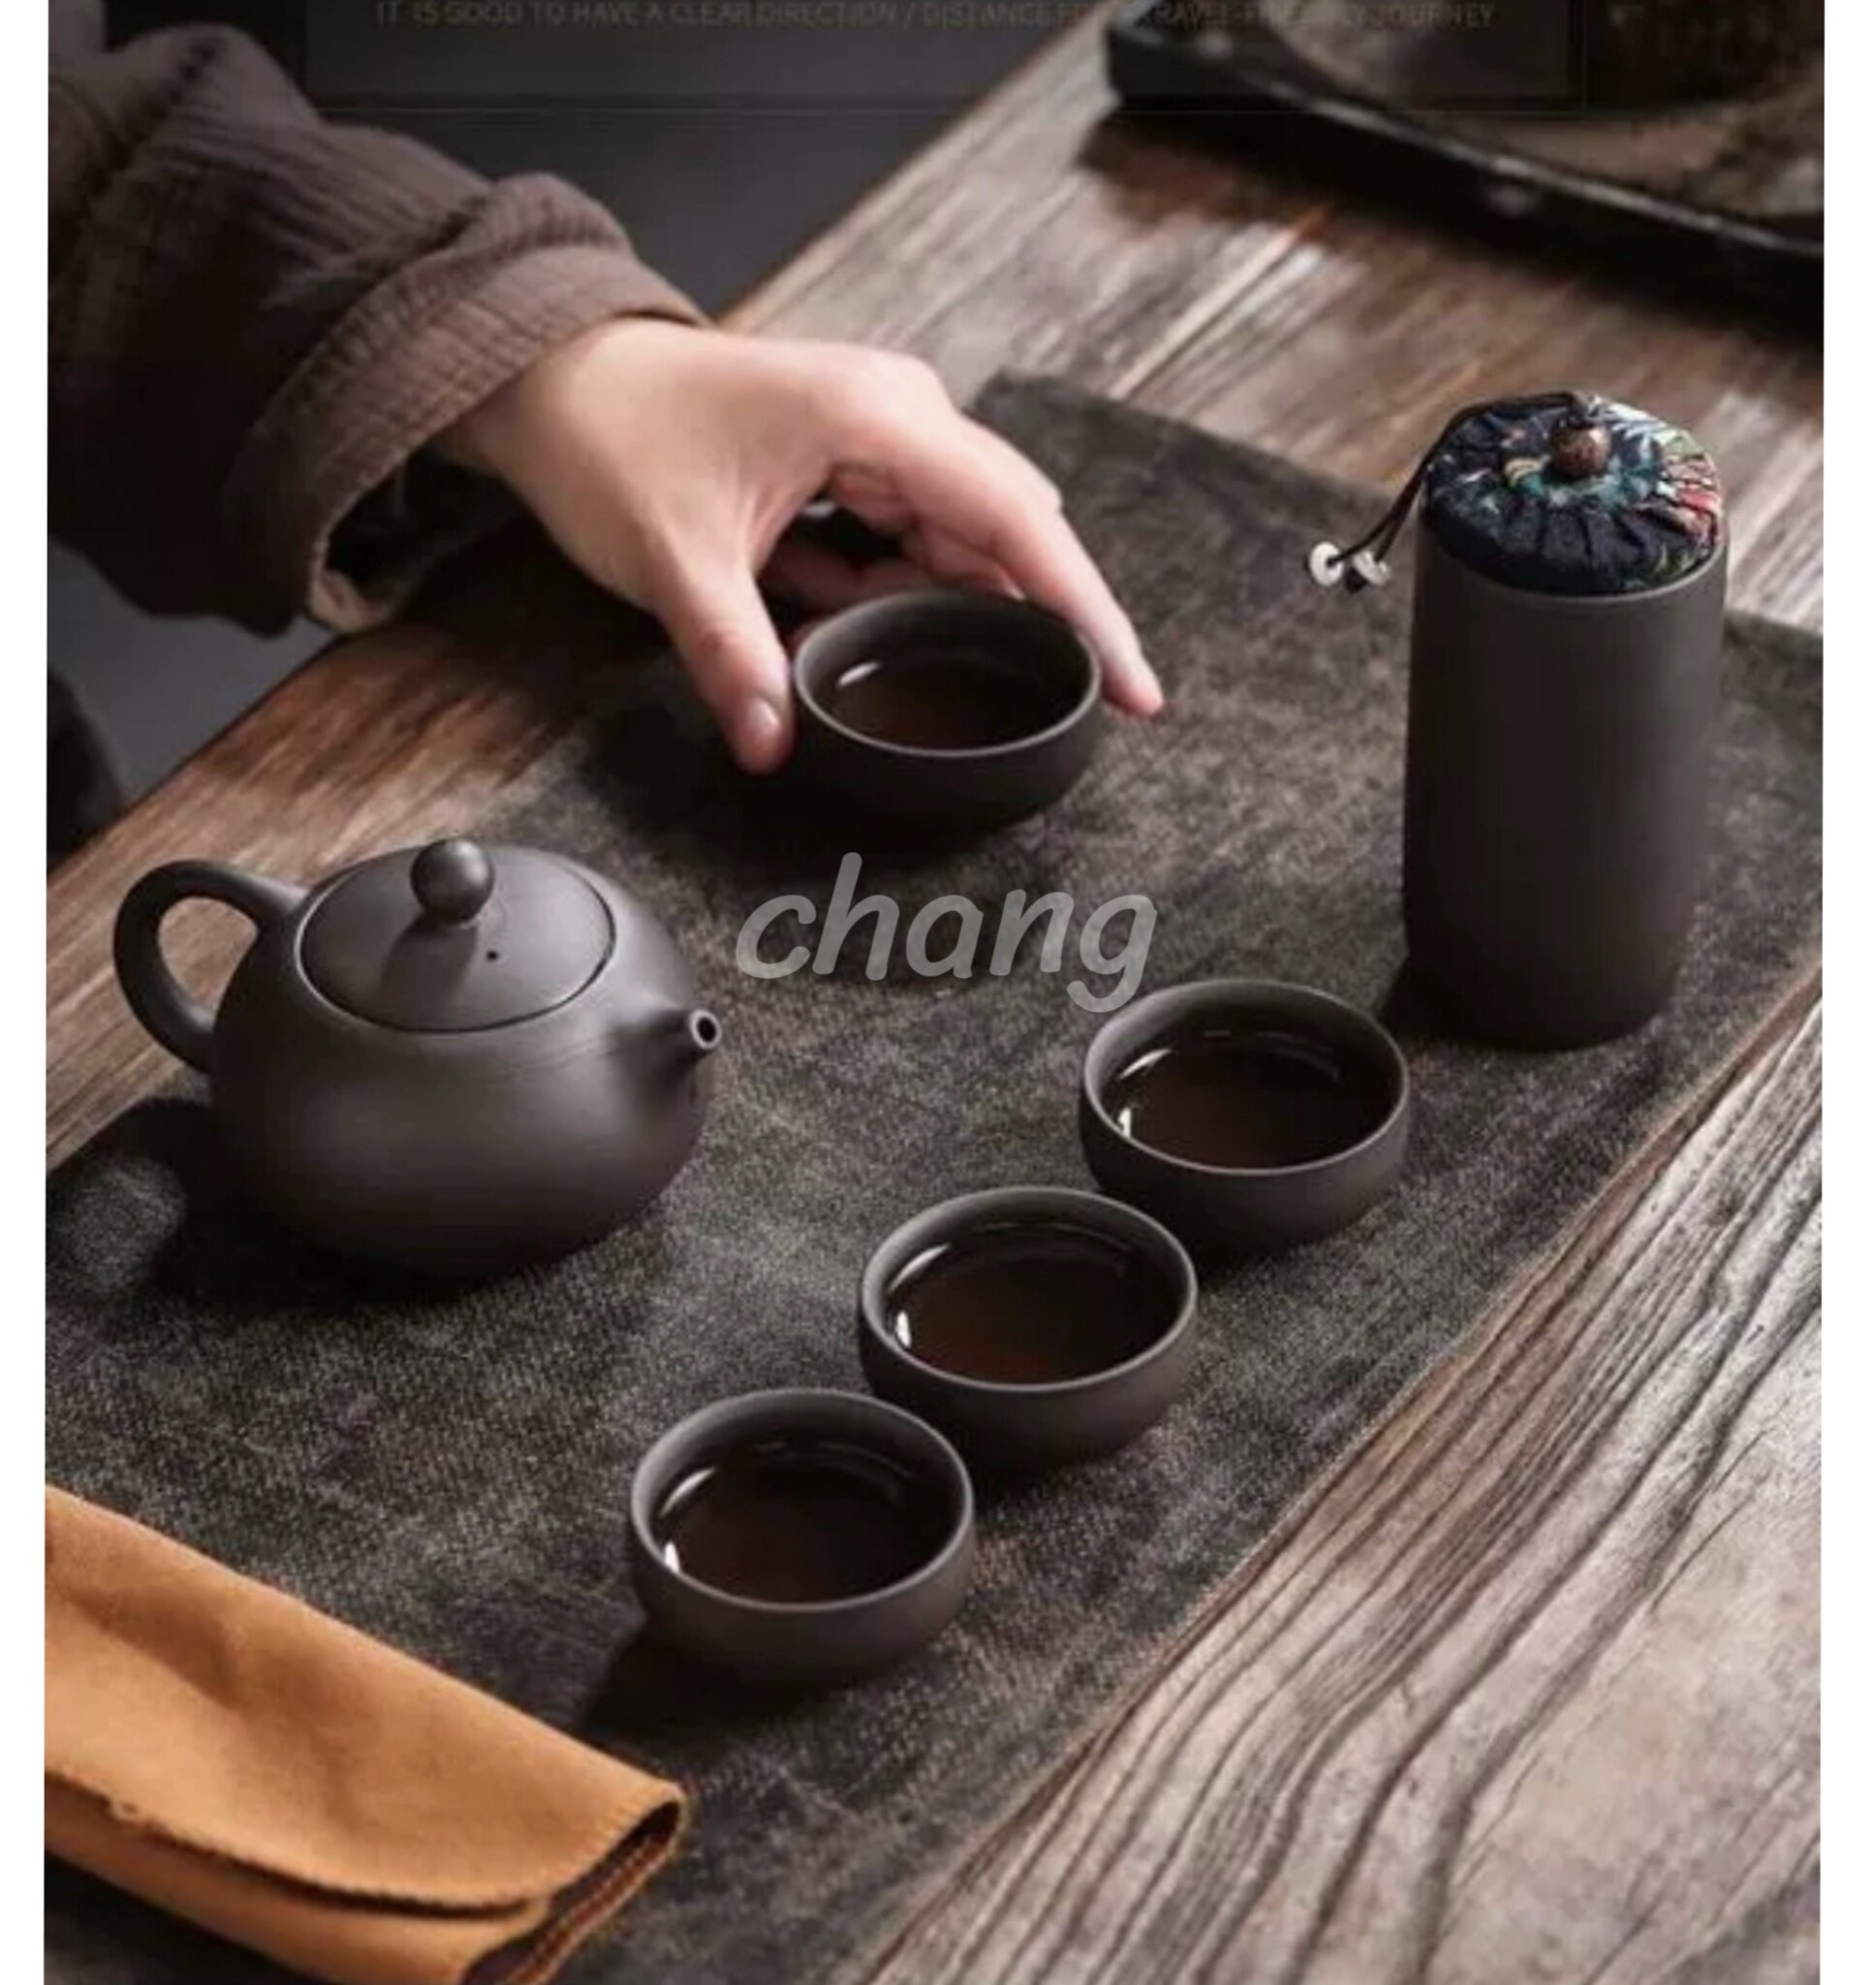 กาชงชา ชุดน้ำชา เซรามิก แก้ว 4ใบ มีที่ใส่ใบชา พร้อมกระเป๋า CH0514